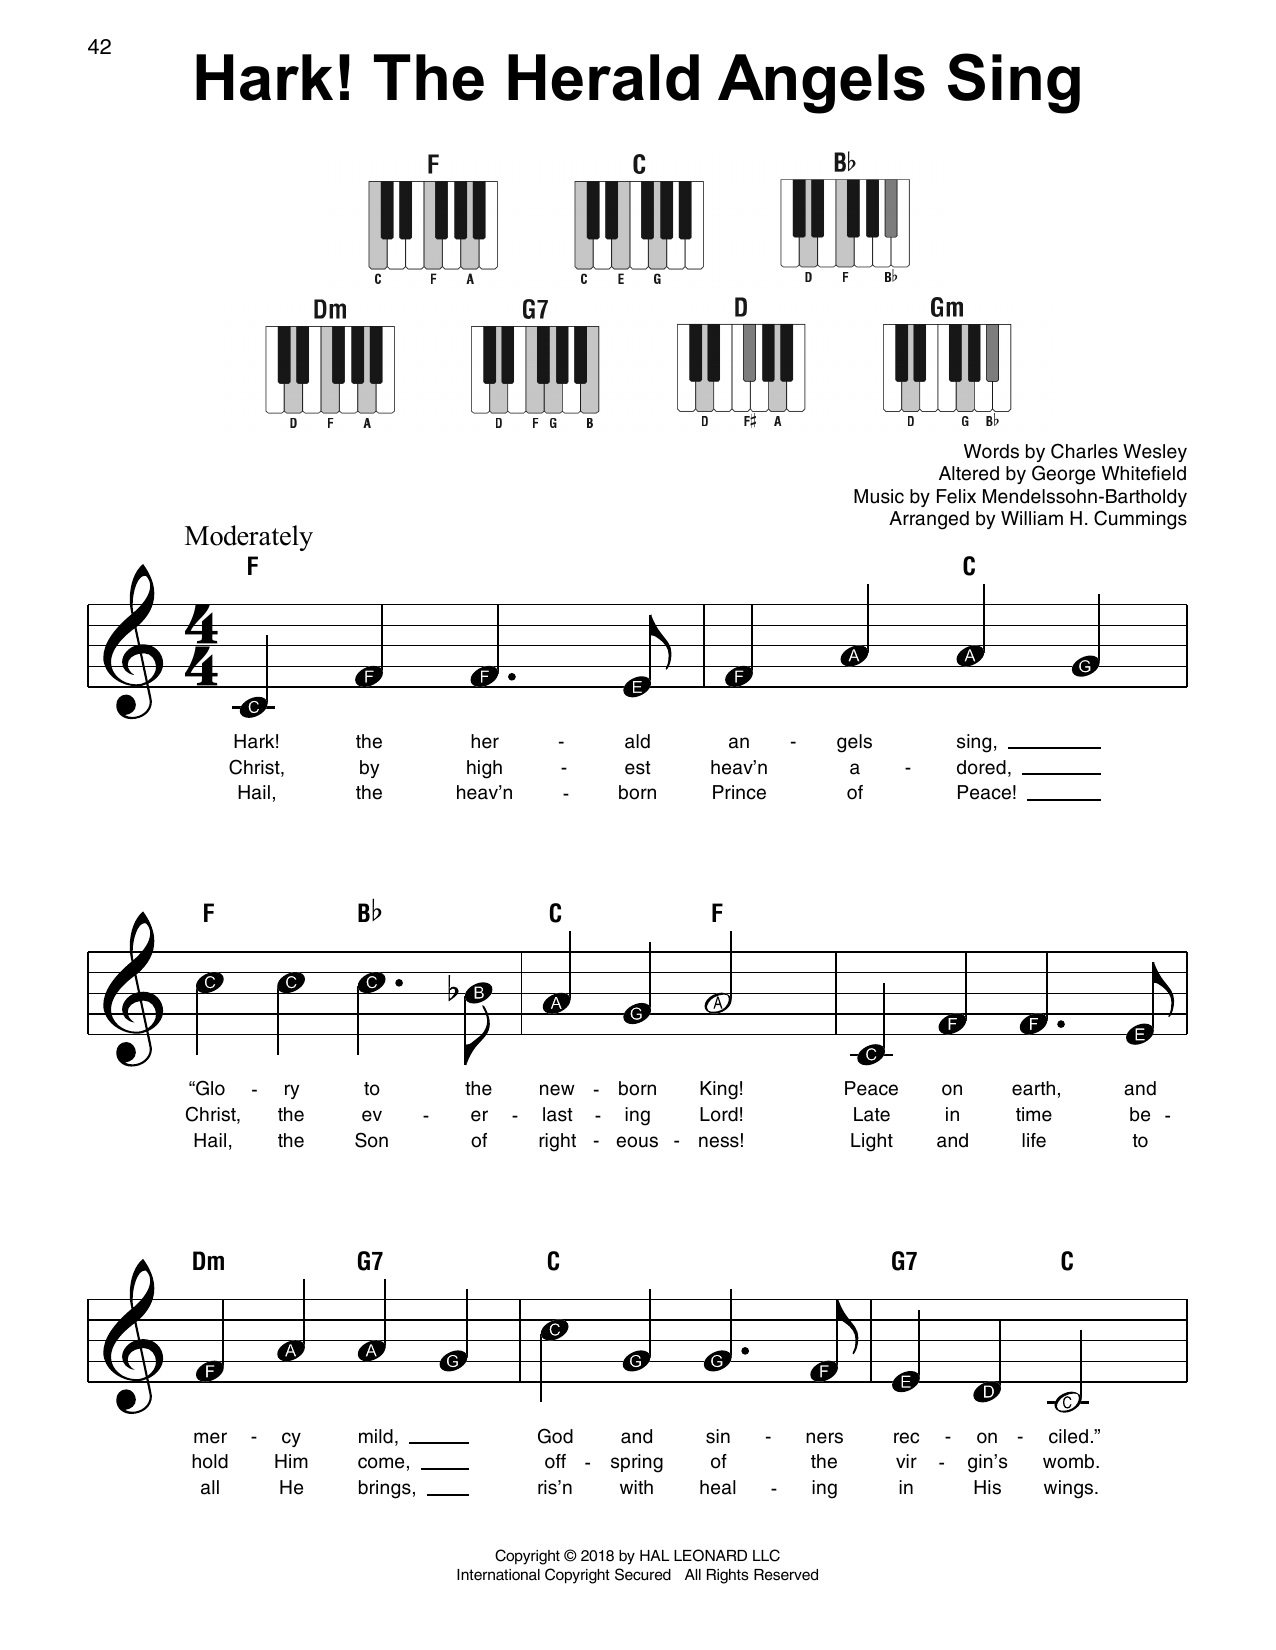 Download Felix Mendelssohn-Bartholdy Hark! The Herald Angels Sing Sheet Music